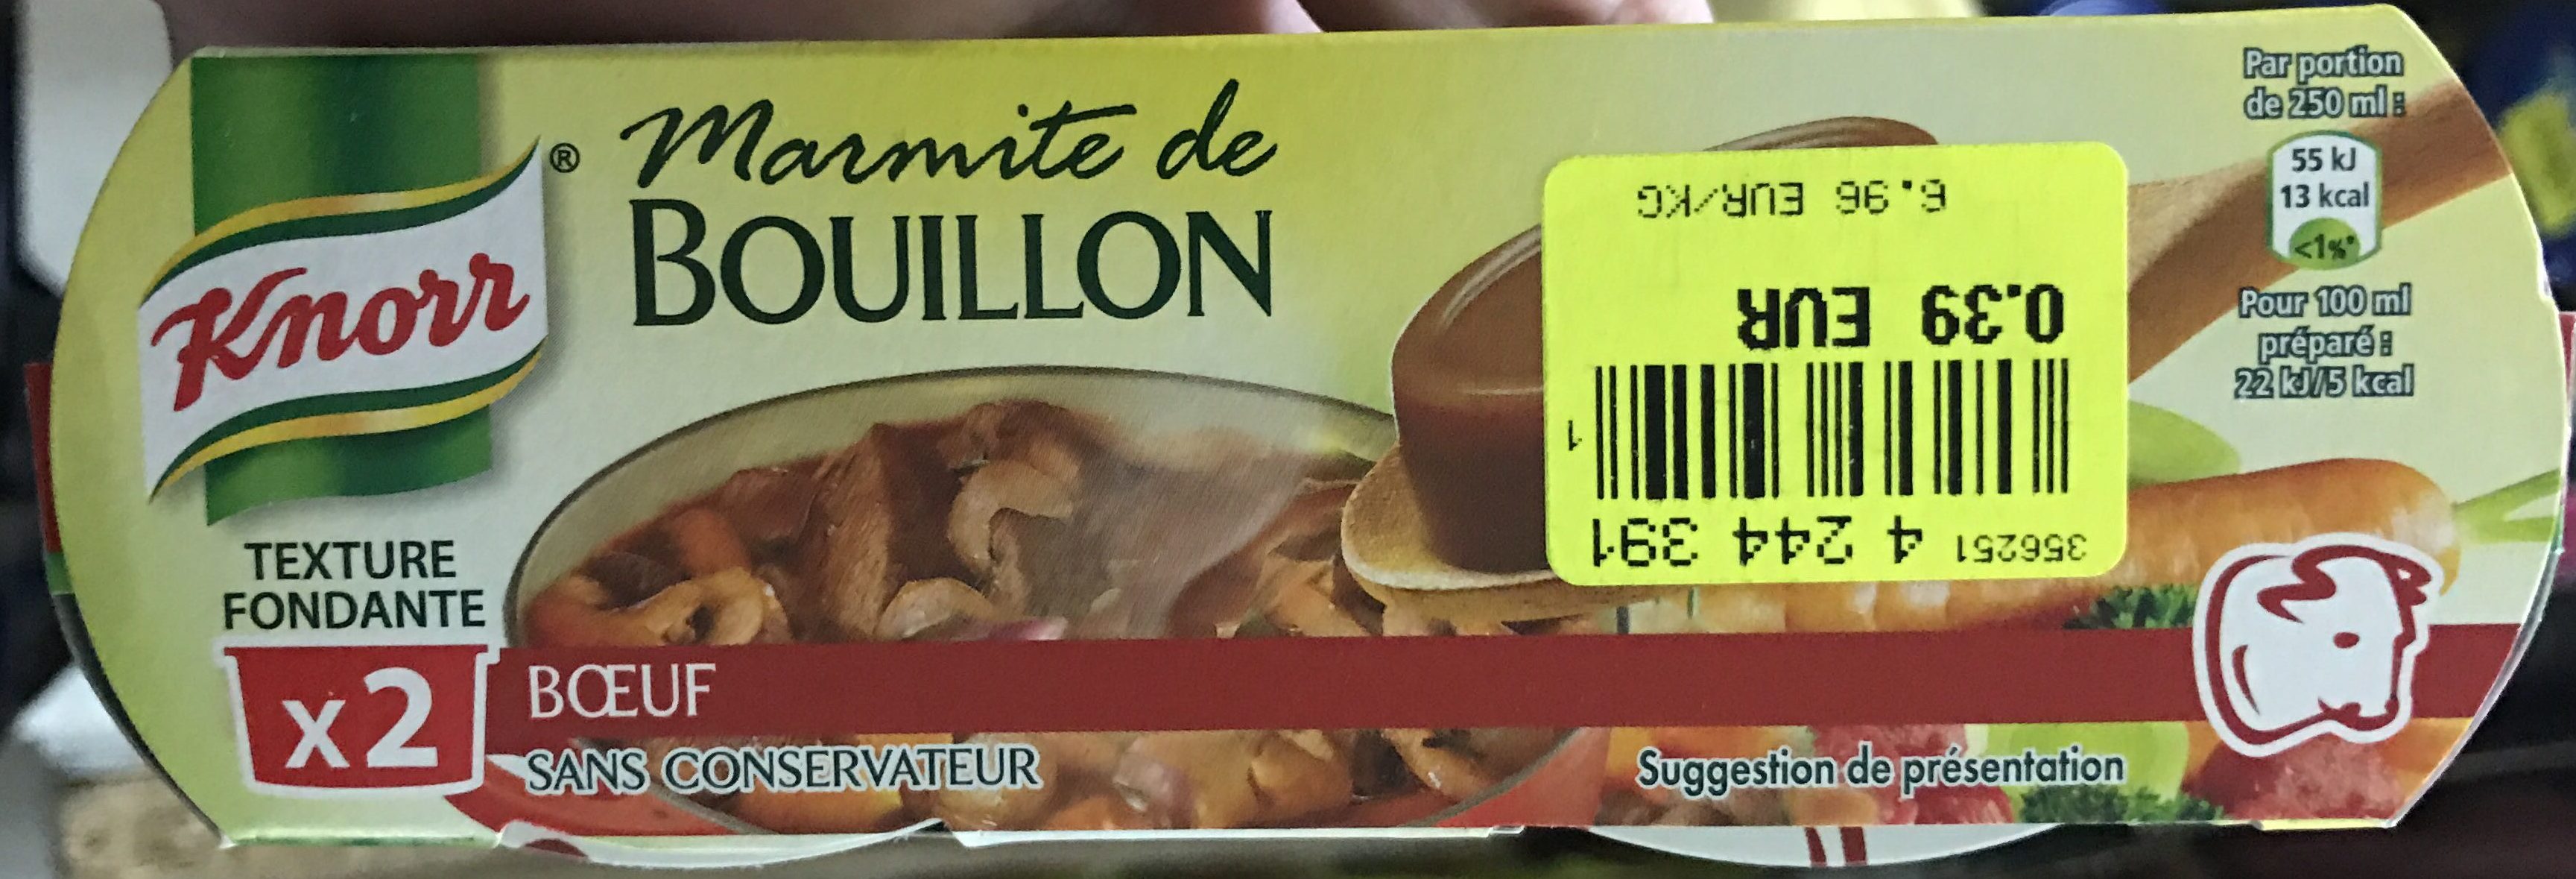 Marmite de Bouillon Bœuf - Produkt - fr